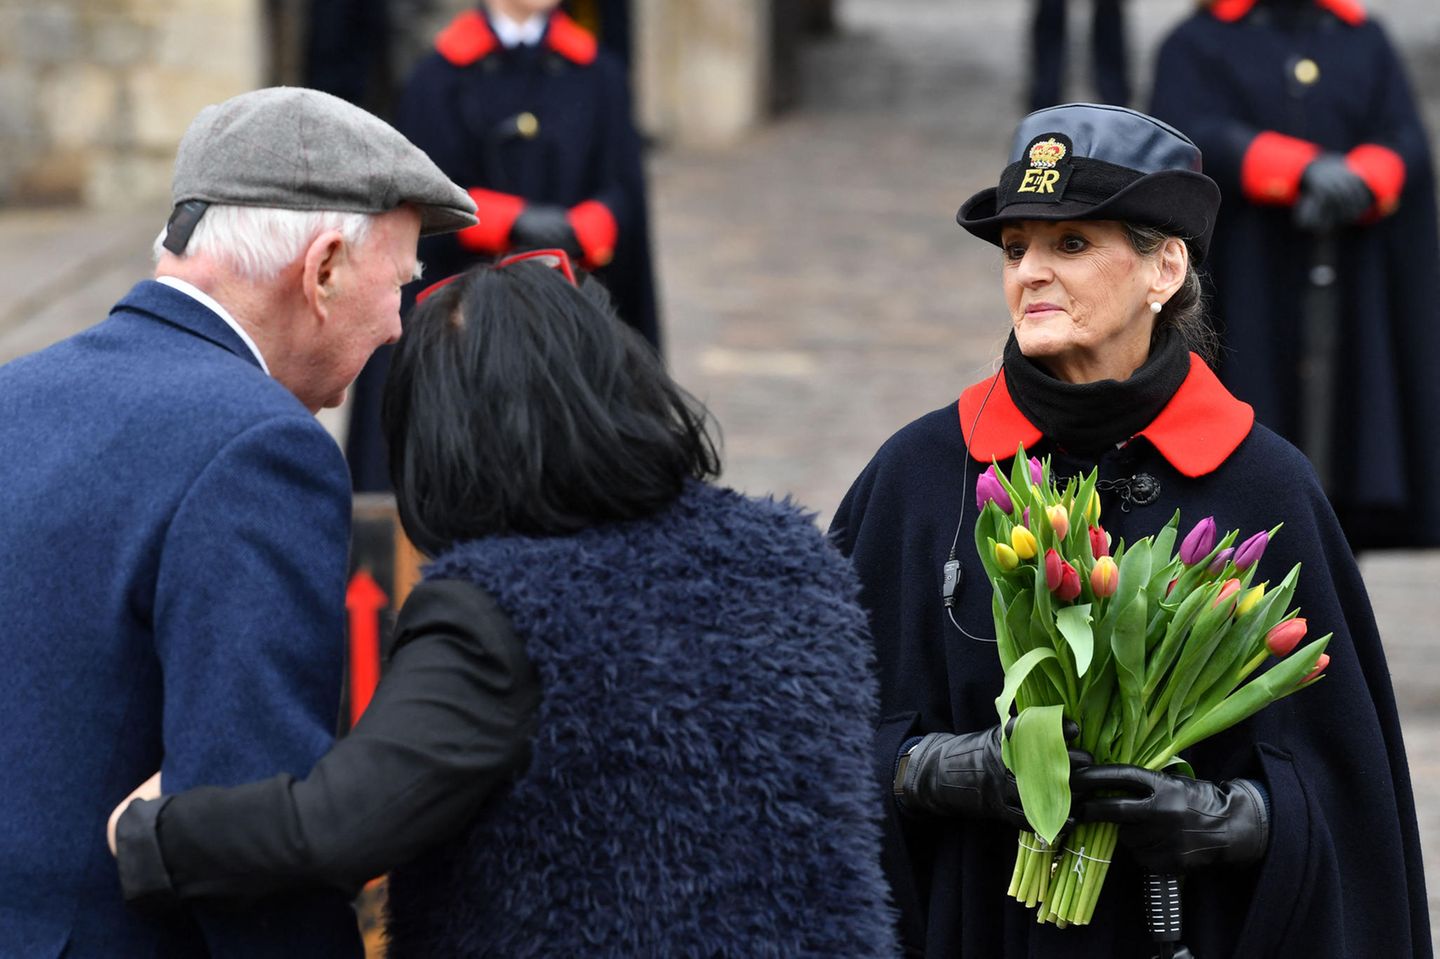 Blumen in Gedenken an den verstorbenen Prinz Philip: Ein Paar überreicht einer Aufseherin vor den Toren von Schloss Windsor einen bunten Strauß Tulpen. Warme Worte bauen während des großen Verlusts auf.